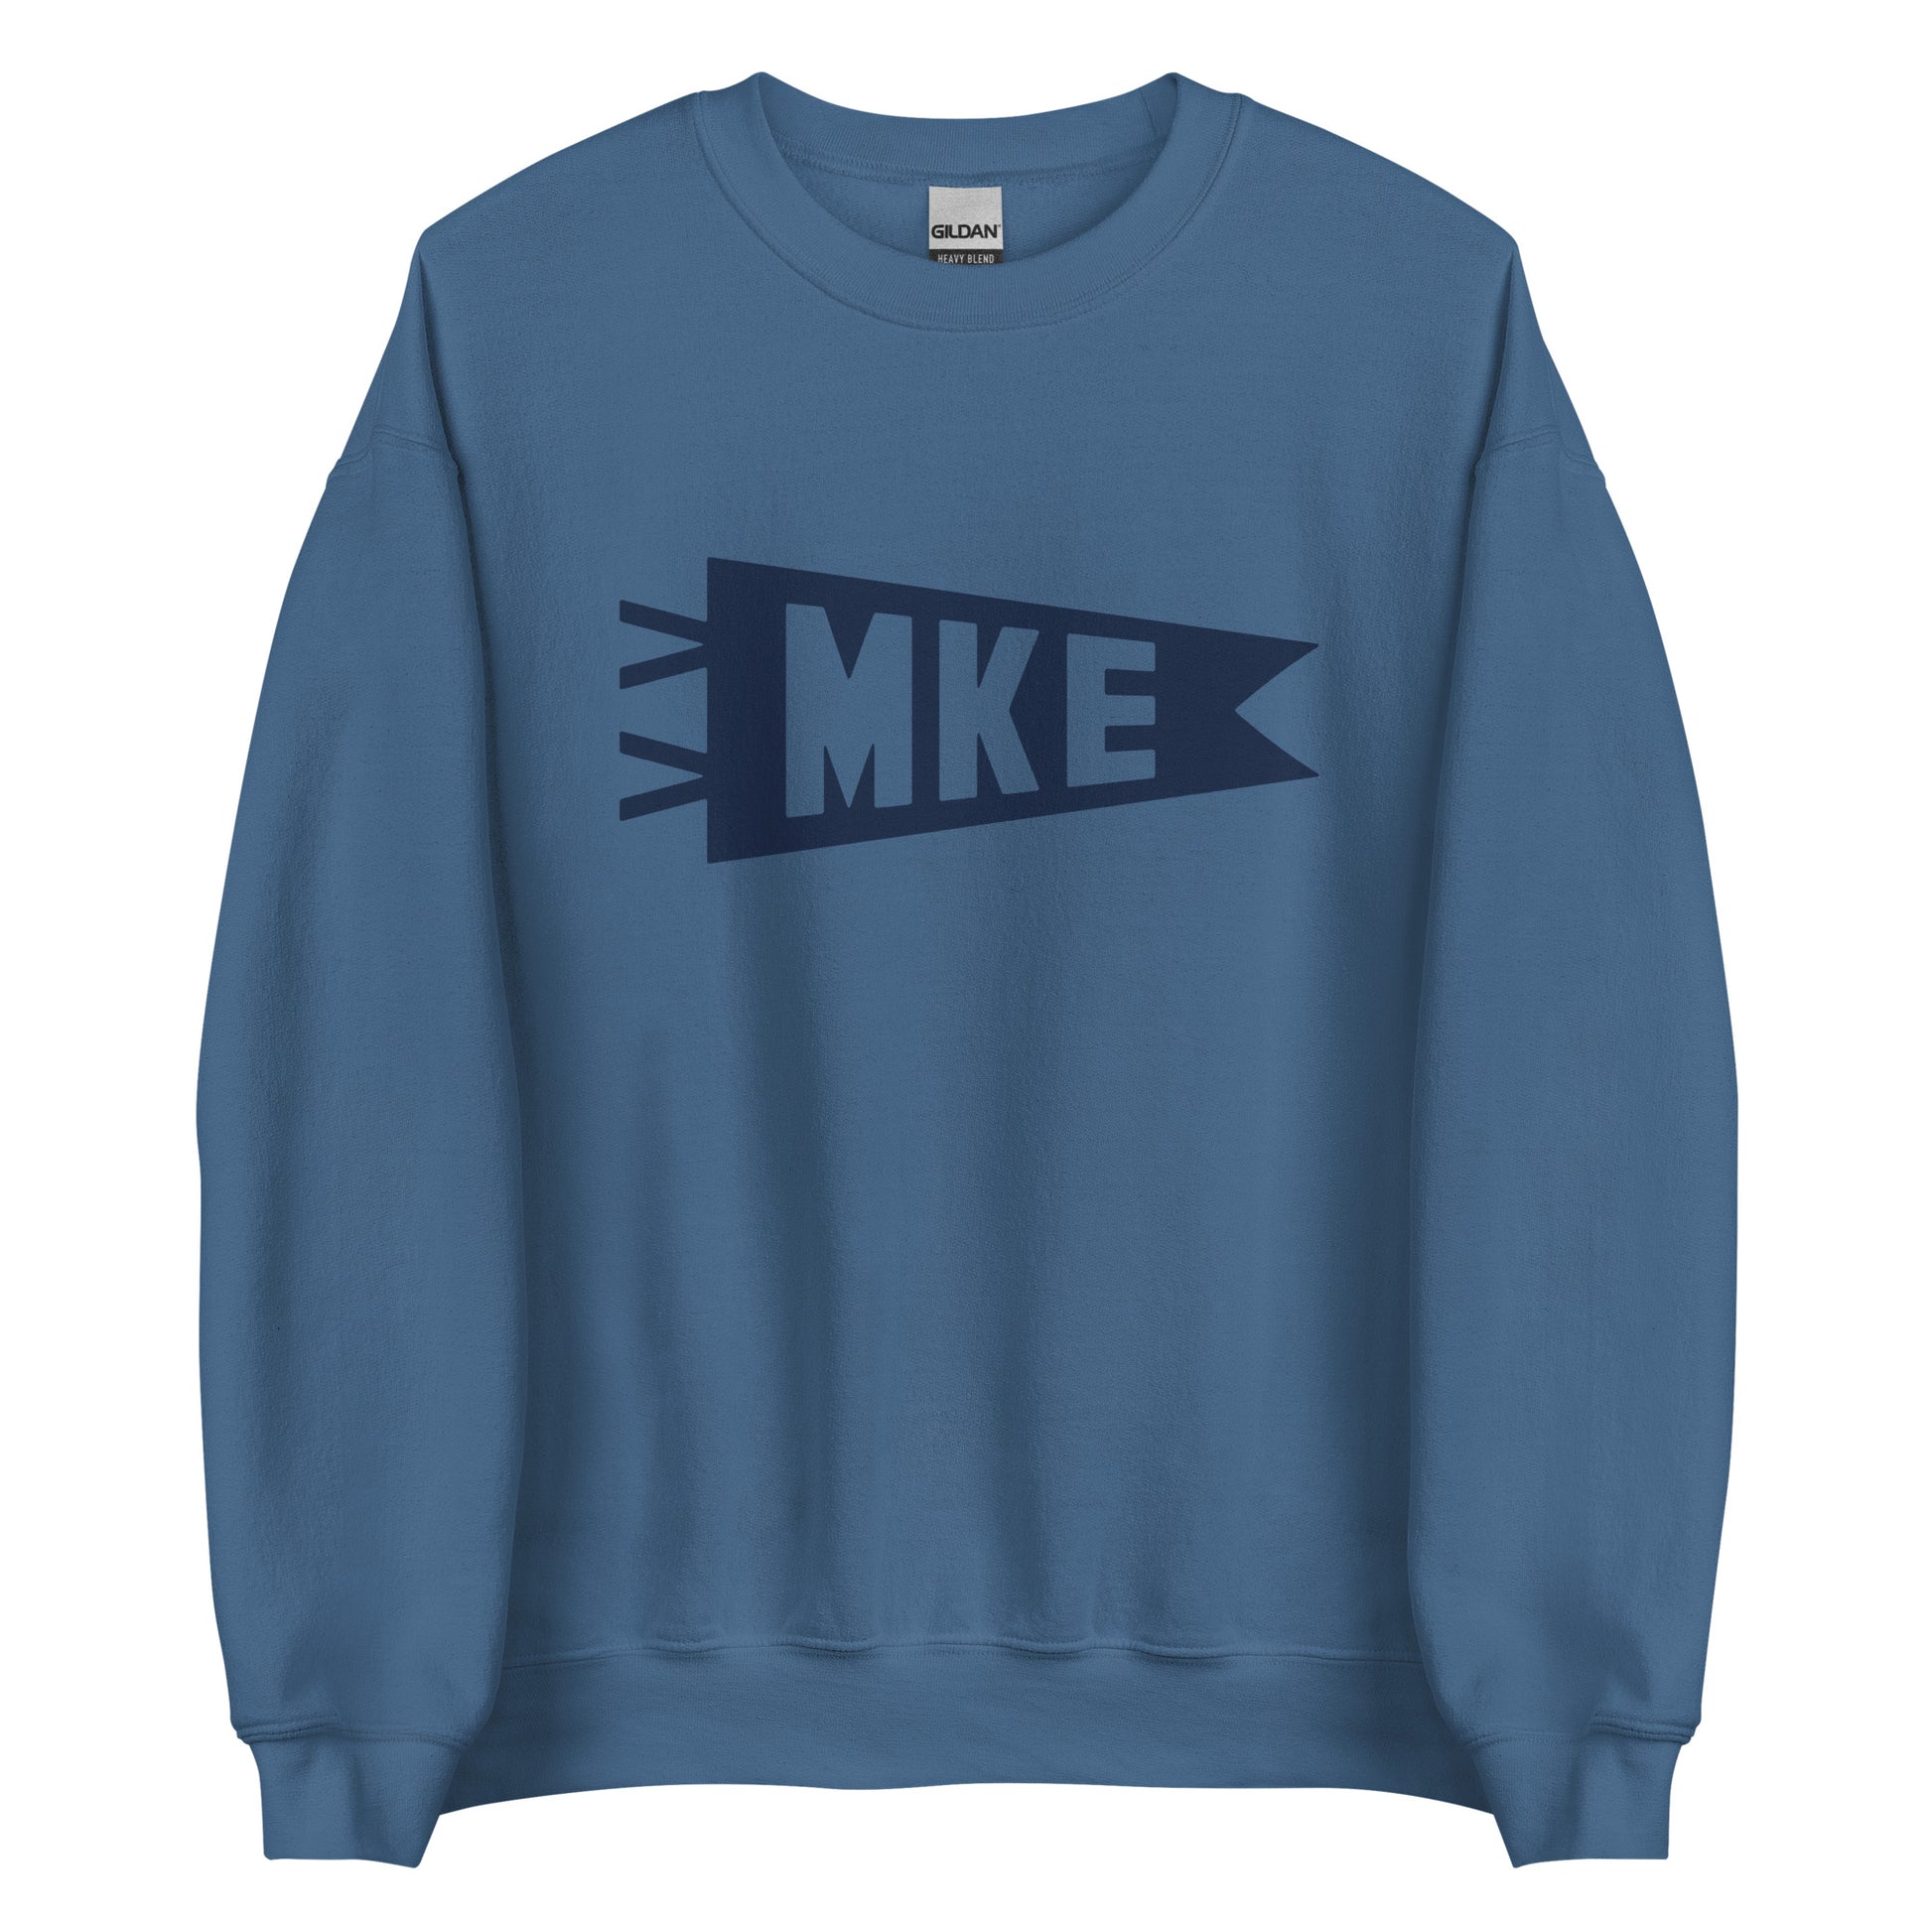 Airport Code Sweatshirt - Navy Blue Graphic • MKE Milwaukee • YHM Designs - Image 05